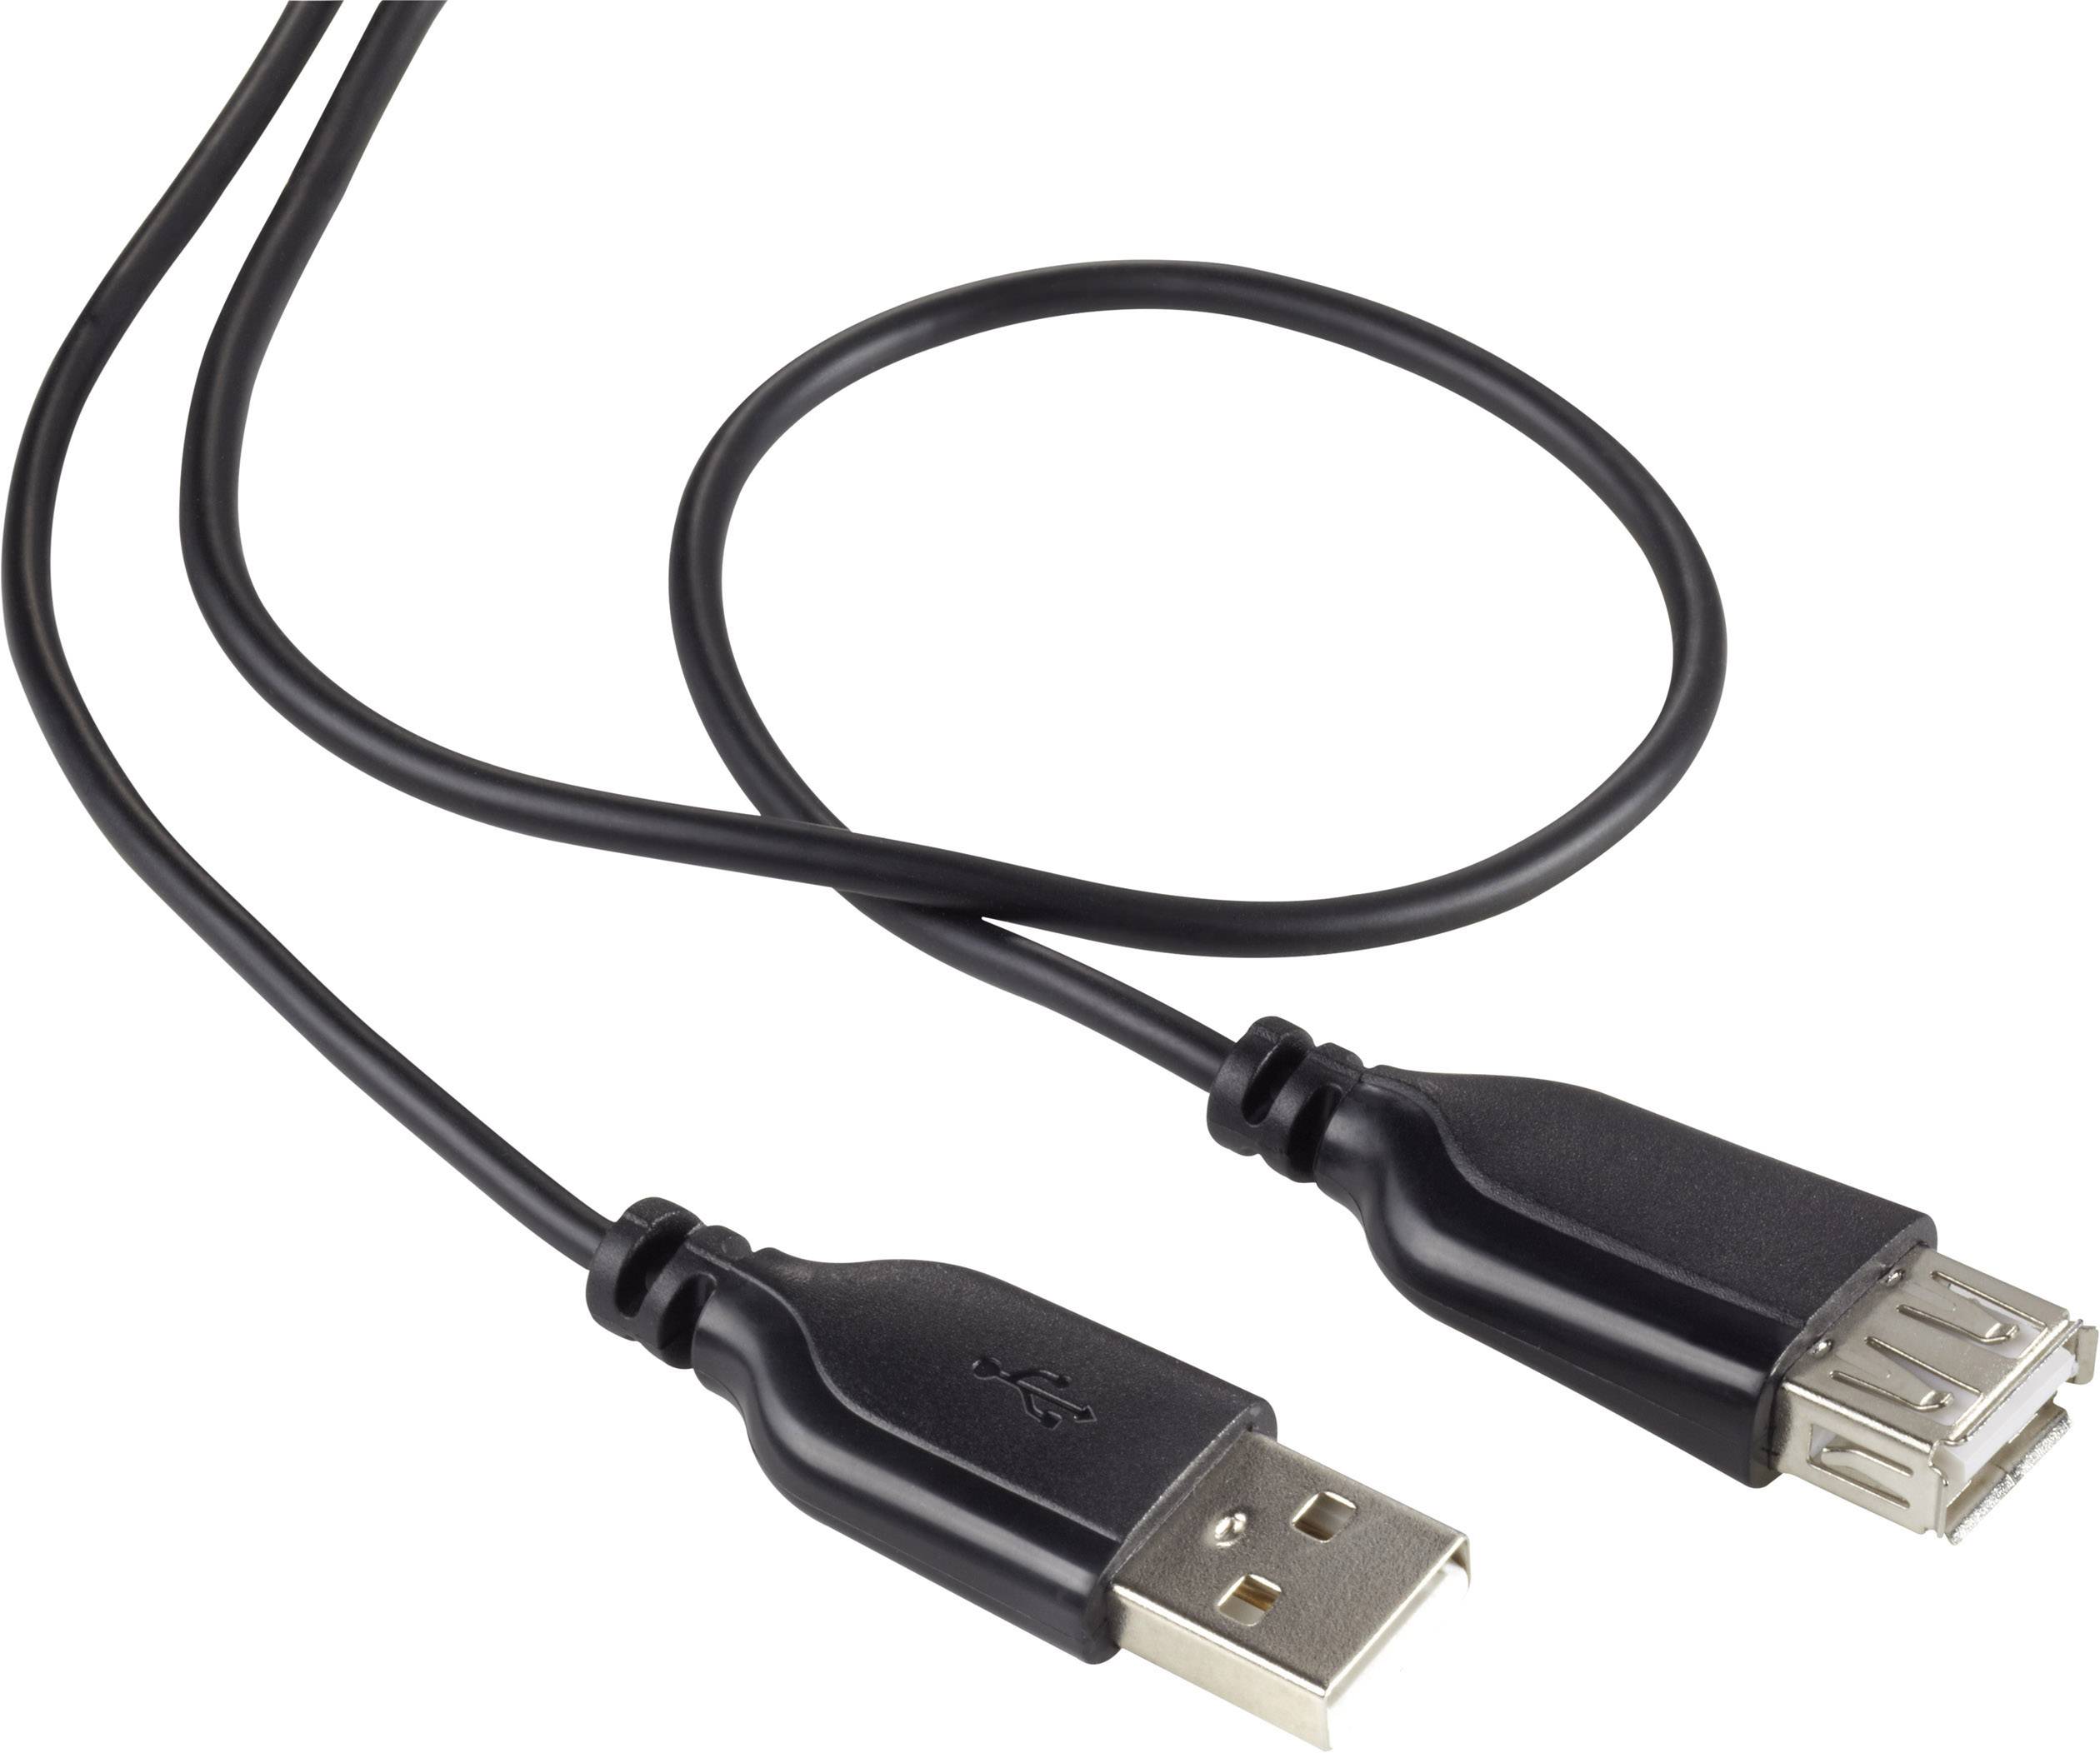 schwarz Micrófono USB de Auna diversos colores 920B